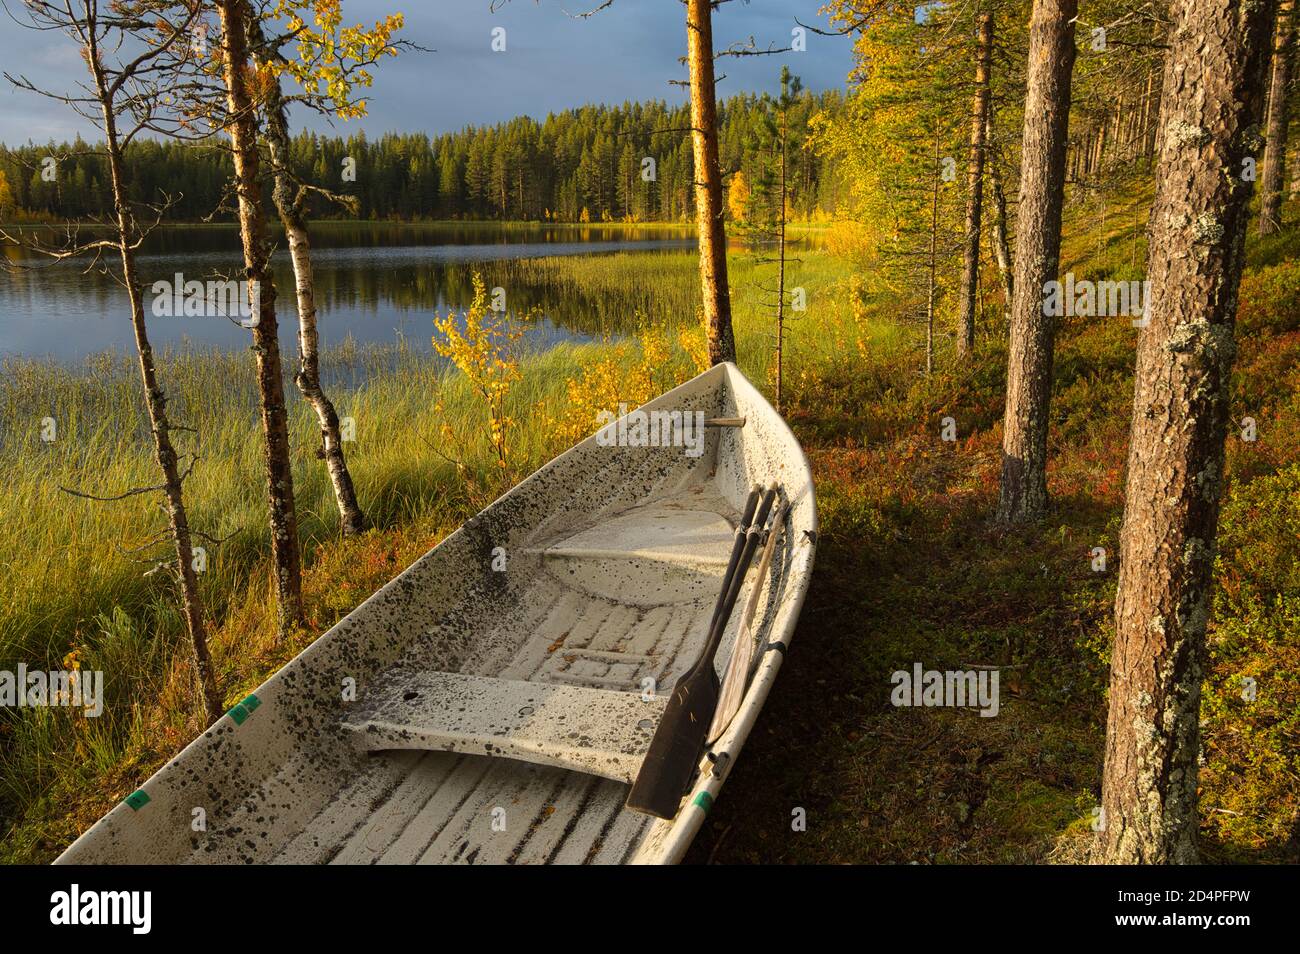 Ruderboot bei Harjujärvi in Muonio, Lappland, Finnland Stockfoto